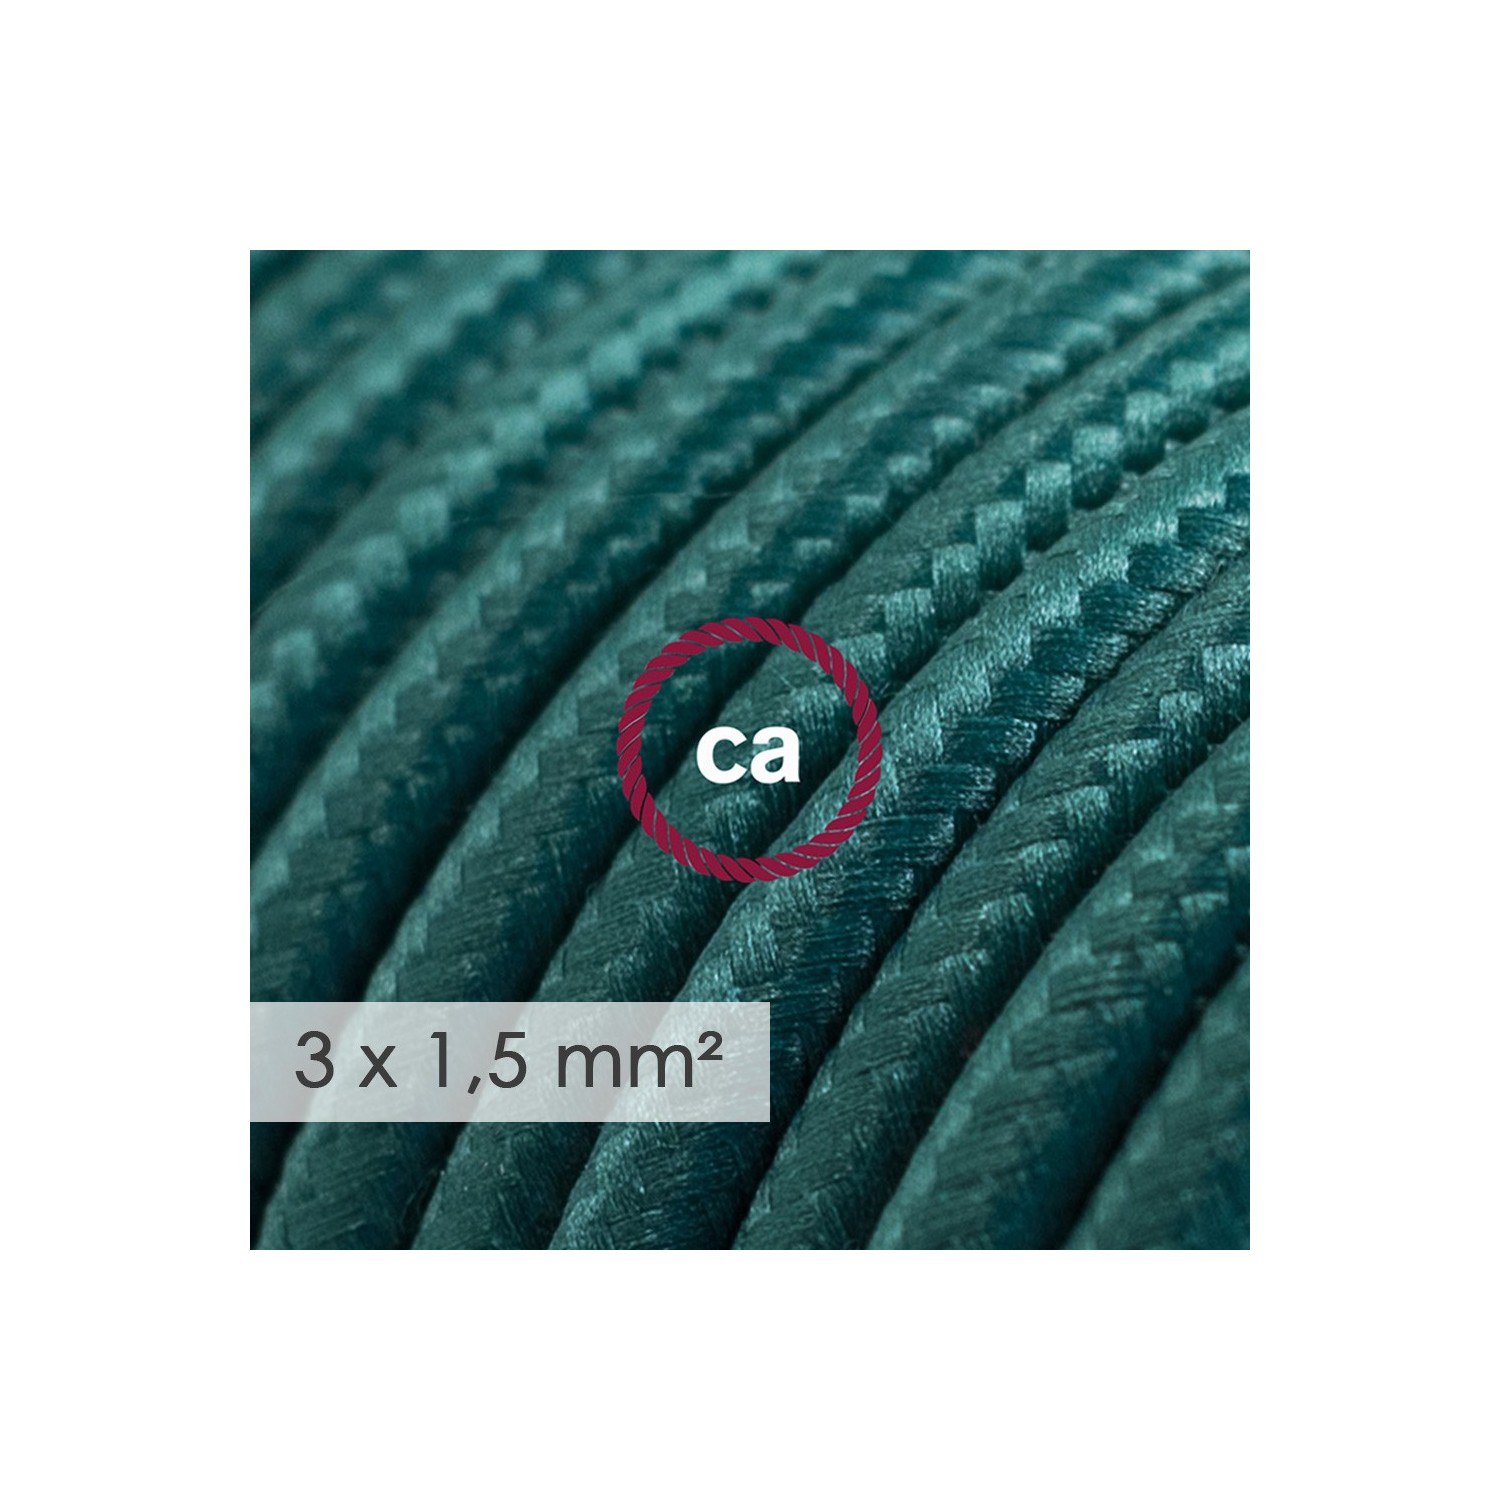 Stekkerdoos met strijkijzersnoer van donkergroene viscose RM21 en randaarde stekker met comfortabele "ring" grip